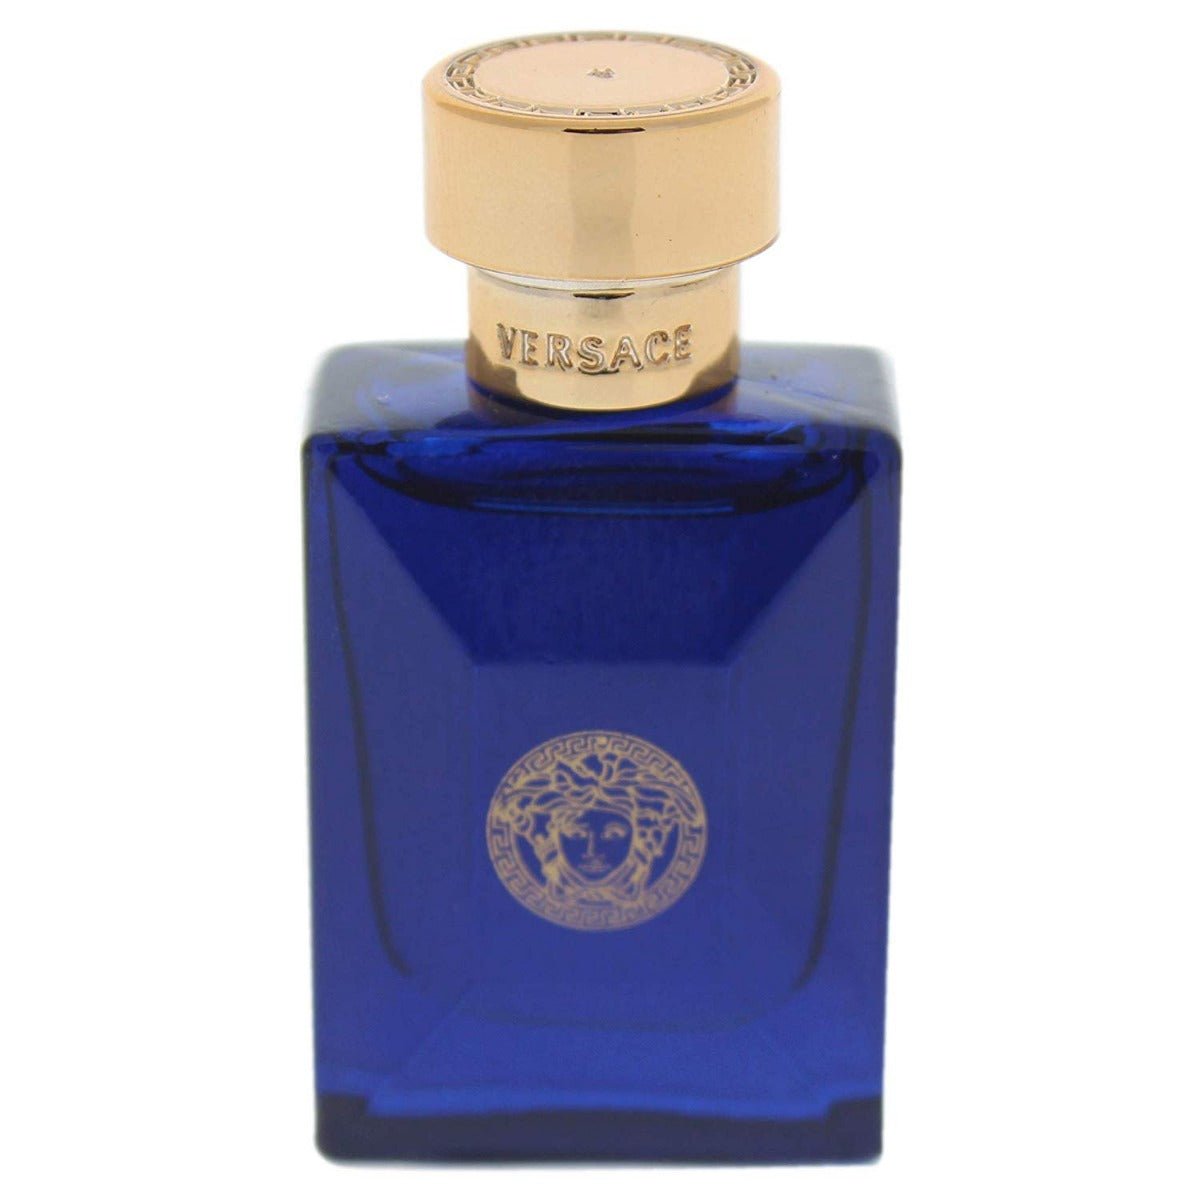 Versace Pour Homme Dylan Blue Miniature Perfume for Men - Eau de Toilette, 5 ml - samawa perfumes 